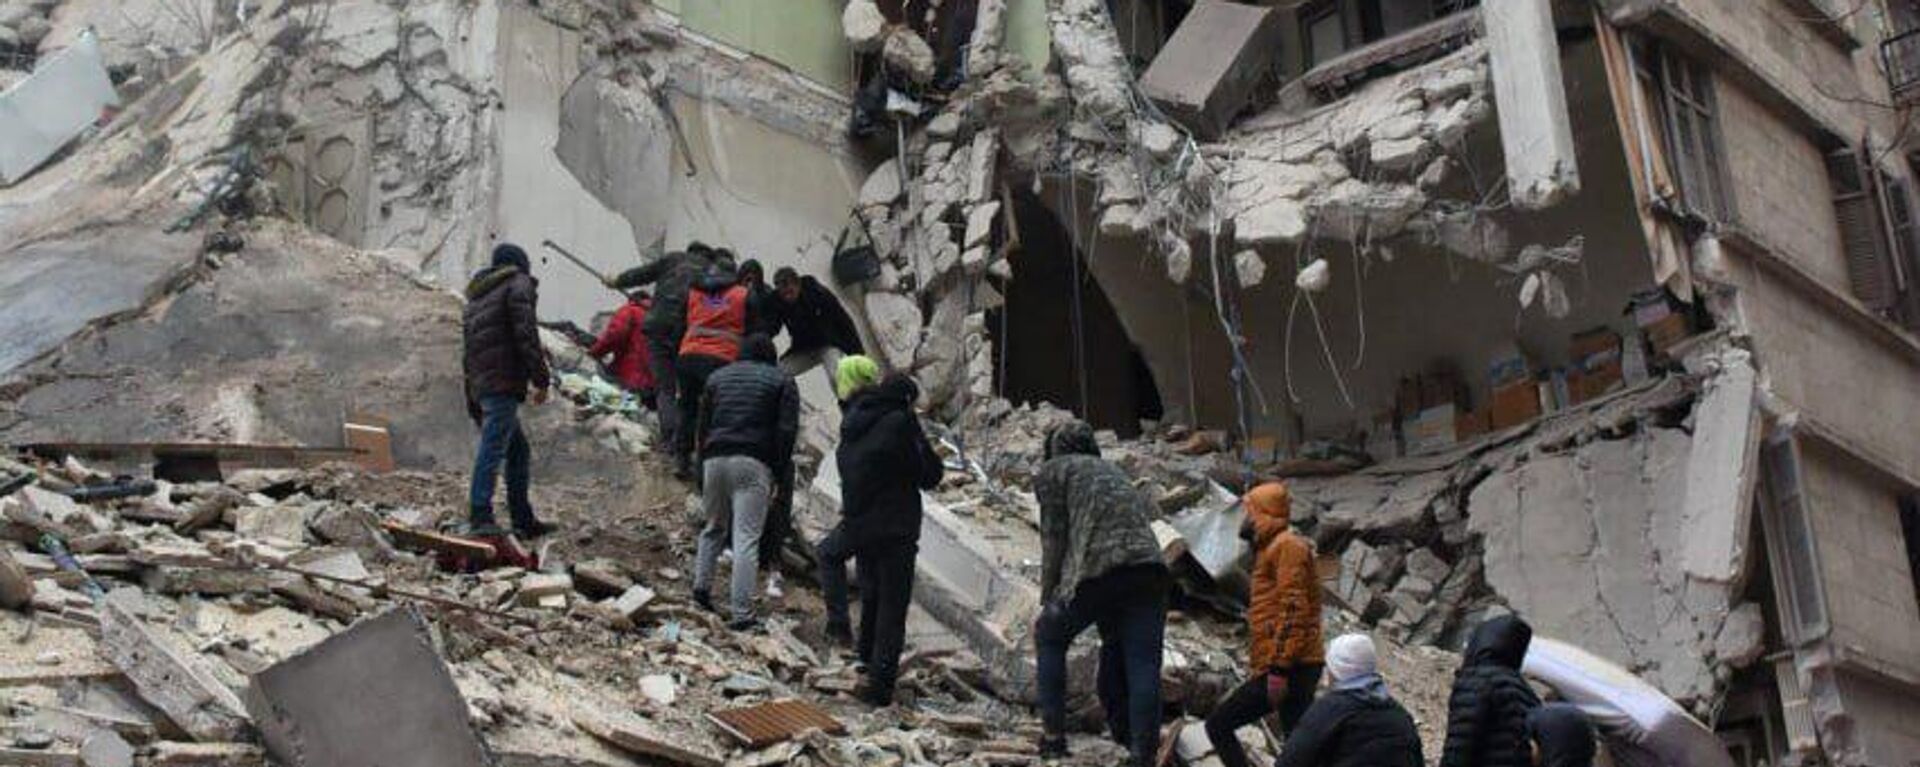 Сирийские спасатели и гражданские лица ищут жертв и выживших среди обломков рухнувшего из-за землетрясения здания (6 февраля 2023). Алеппо - Sputnik Армения, 1920, 11.02.2023